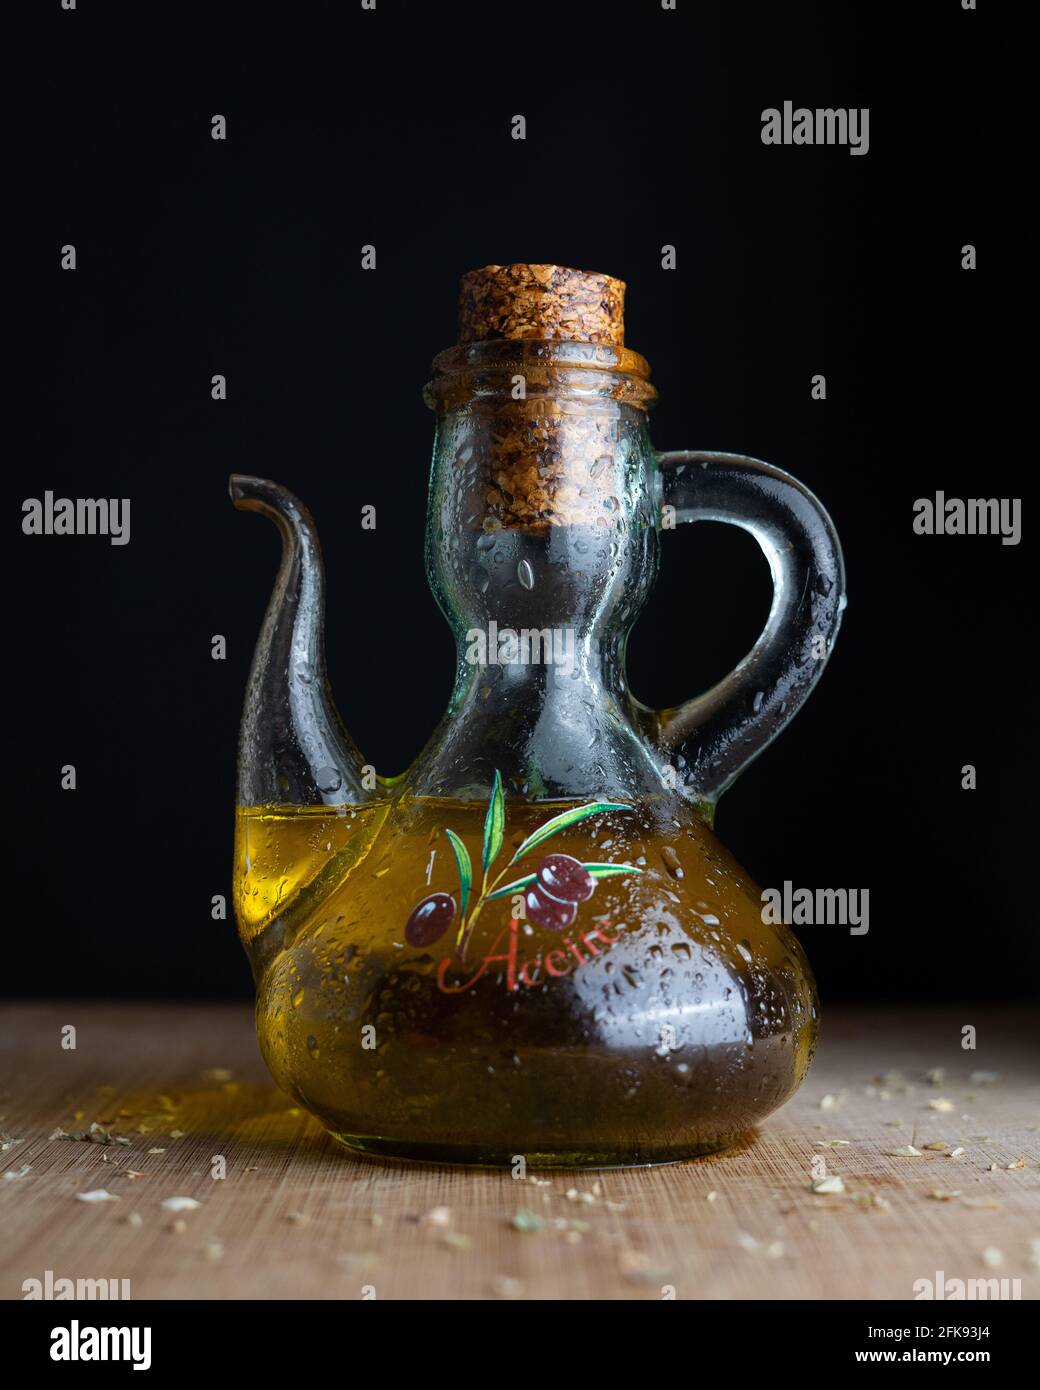 Eine Glasflasche, die extra natives Olivenöl aus Spanien enthält und von Oregano umgeben ist. (Übersetzung 'Aceite': 'Öl') Stockfoto